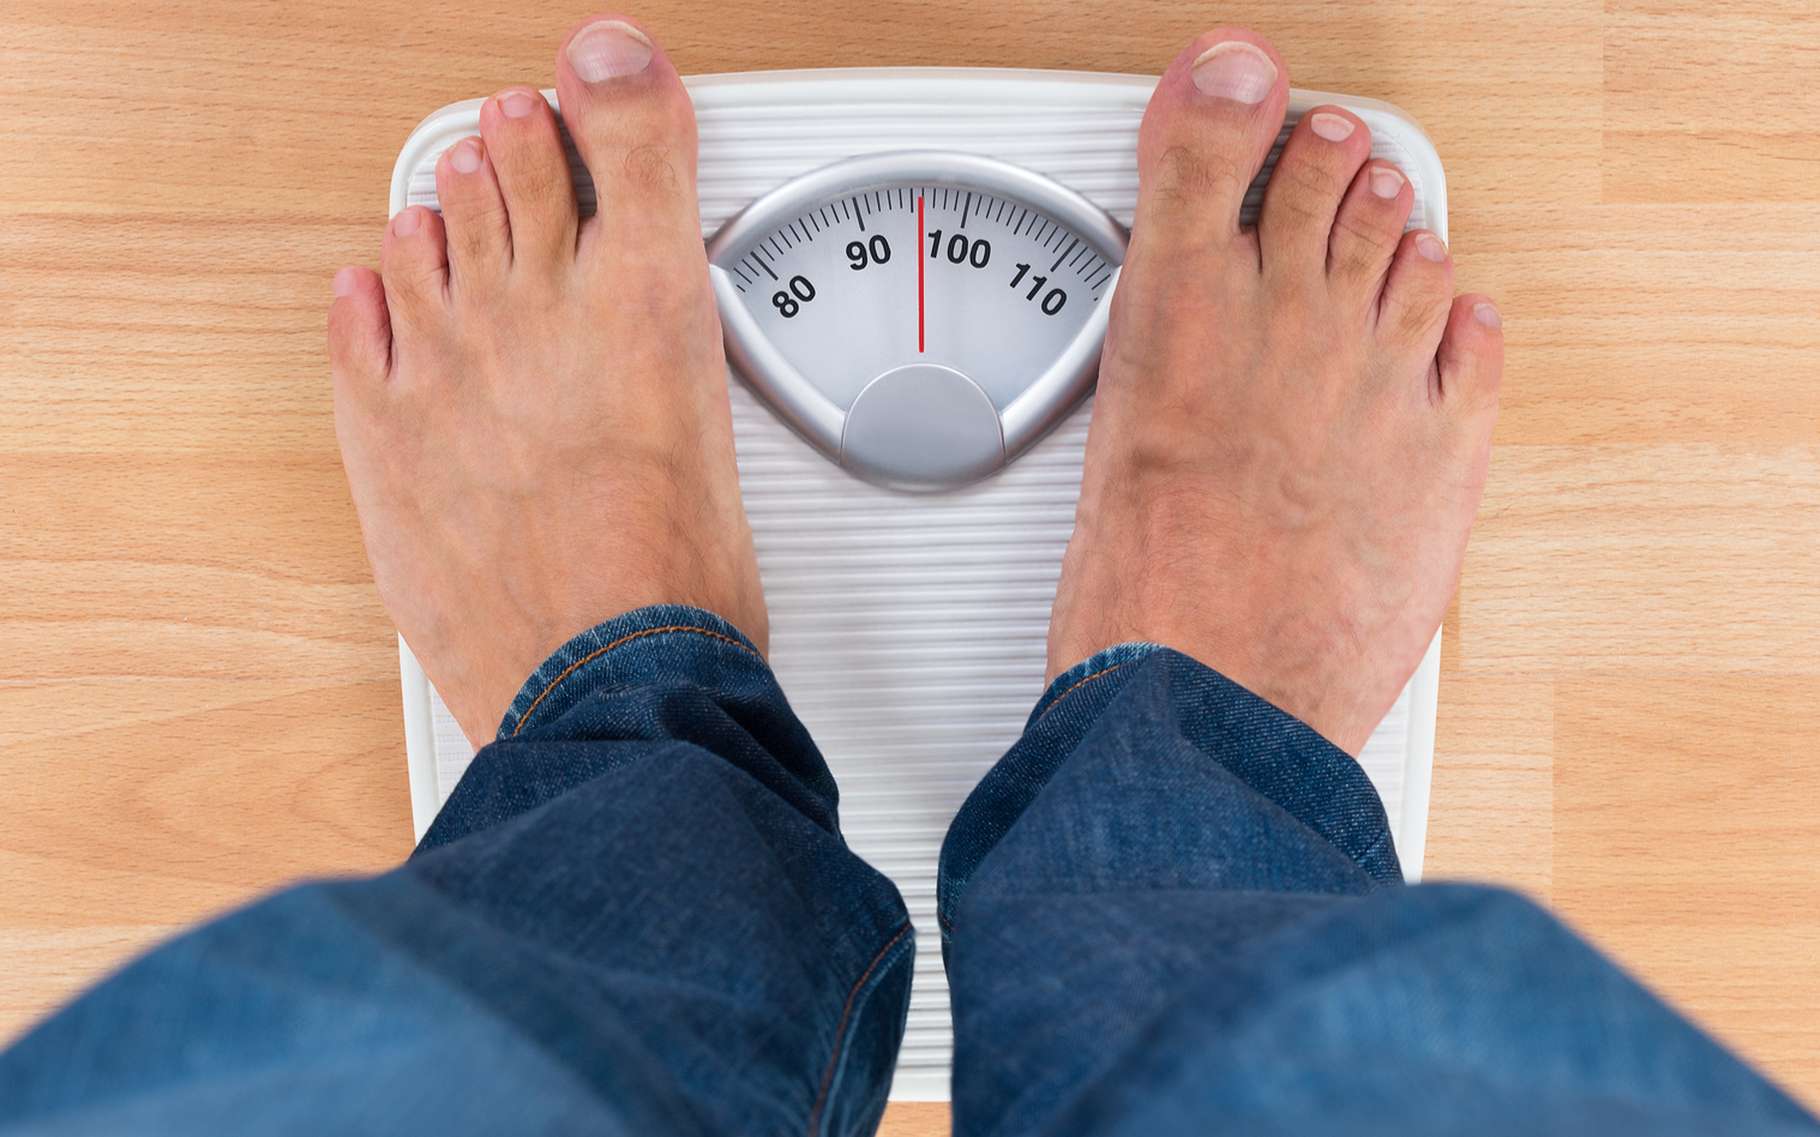 Un pèse-personne indique le poids, mais comme il est calibré pour fonctionner sur Terre, ce poids est automatique traduit en kilogrammes, soit en une masse. © Andery_popov, Shutterstock